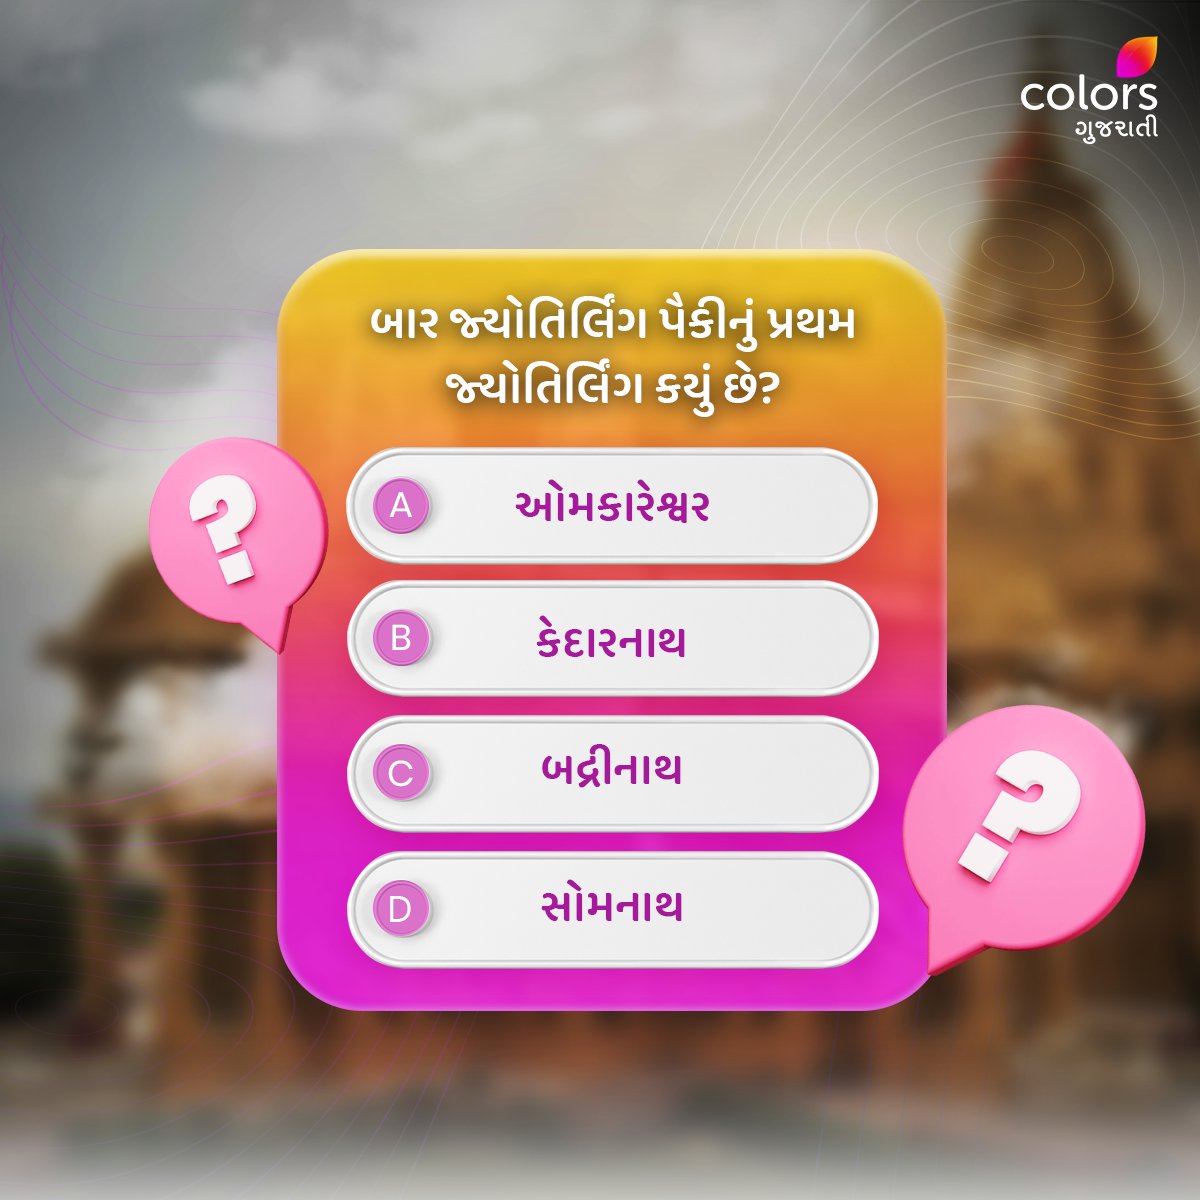 શું તમે જાણો છો કે, આ જ્યોતિર્લિંગ કયું છે🤔? Comment માં જણાવો.👇 

#Colorsgujarati #Gujarat #Quiz #Facts #generalquiz